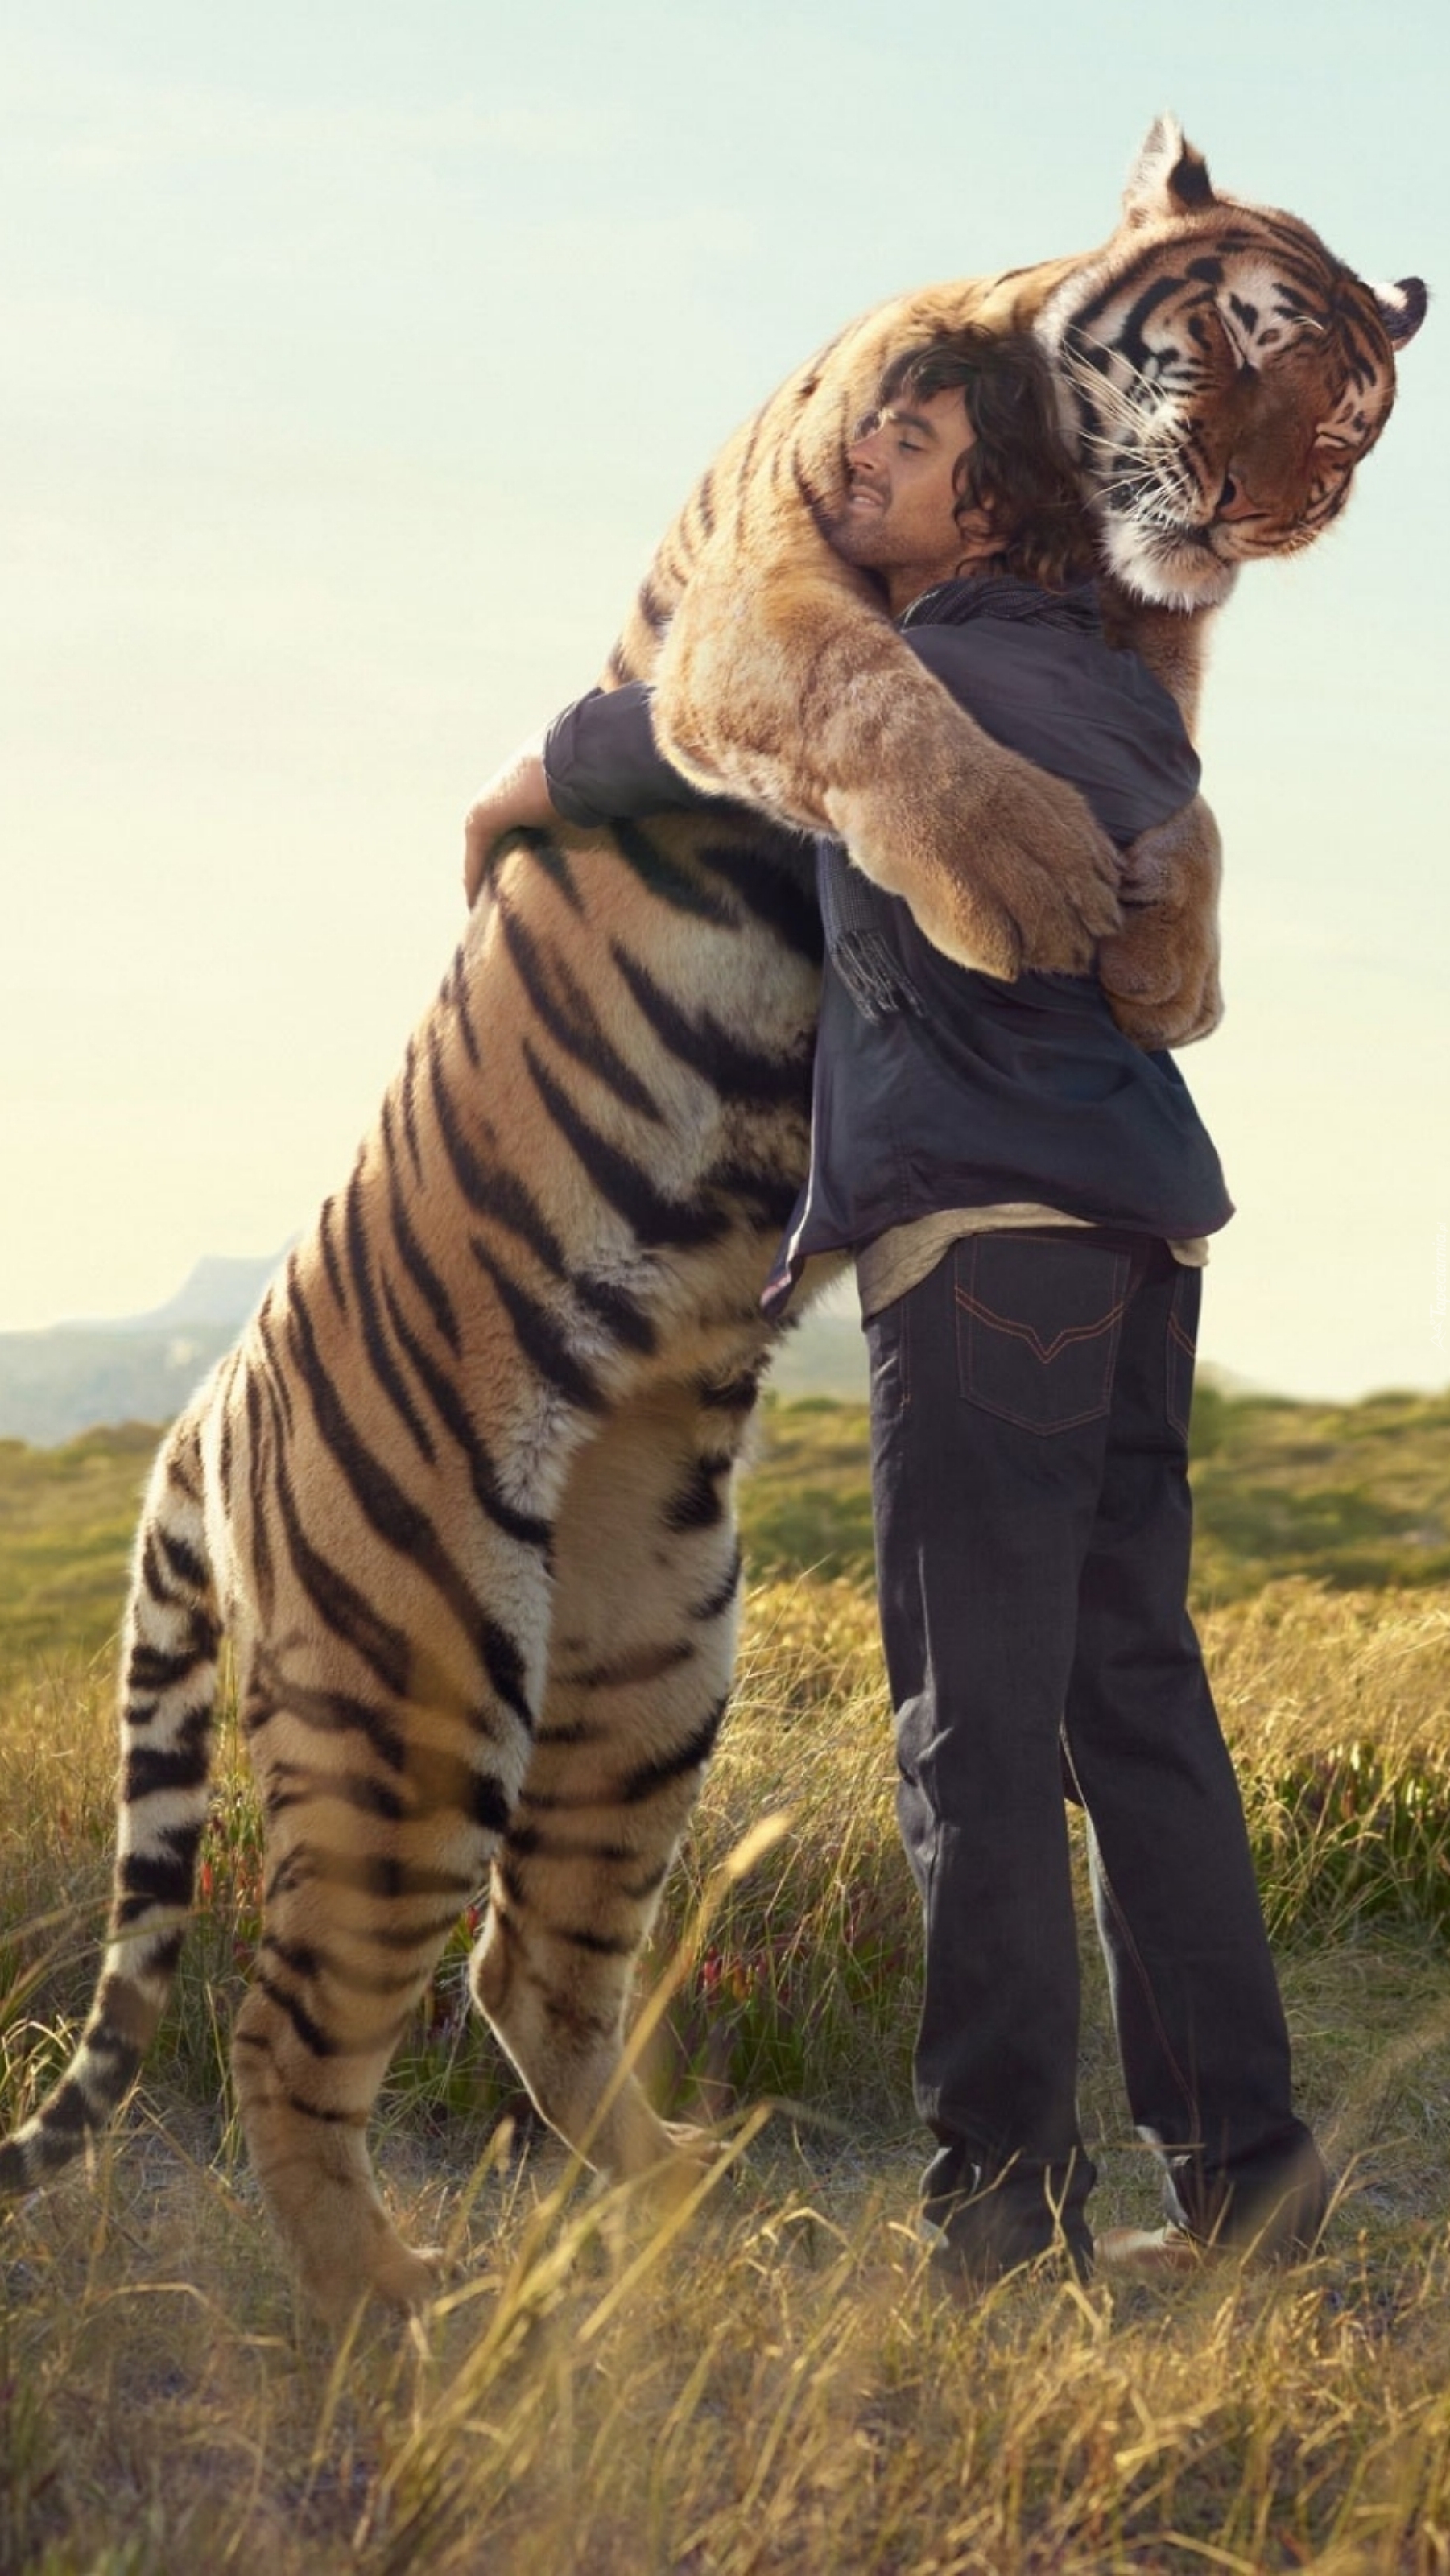 Przywitanie mężczyzny z tygrysem